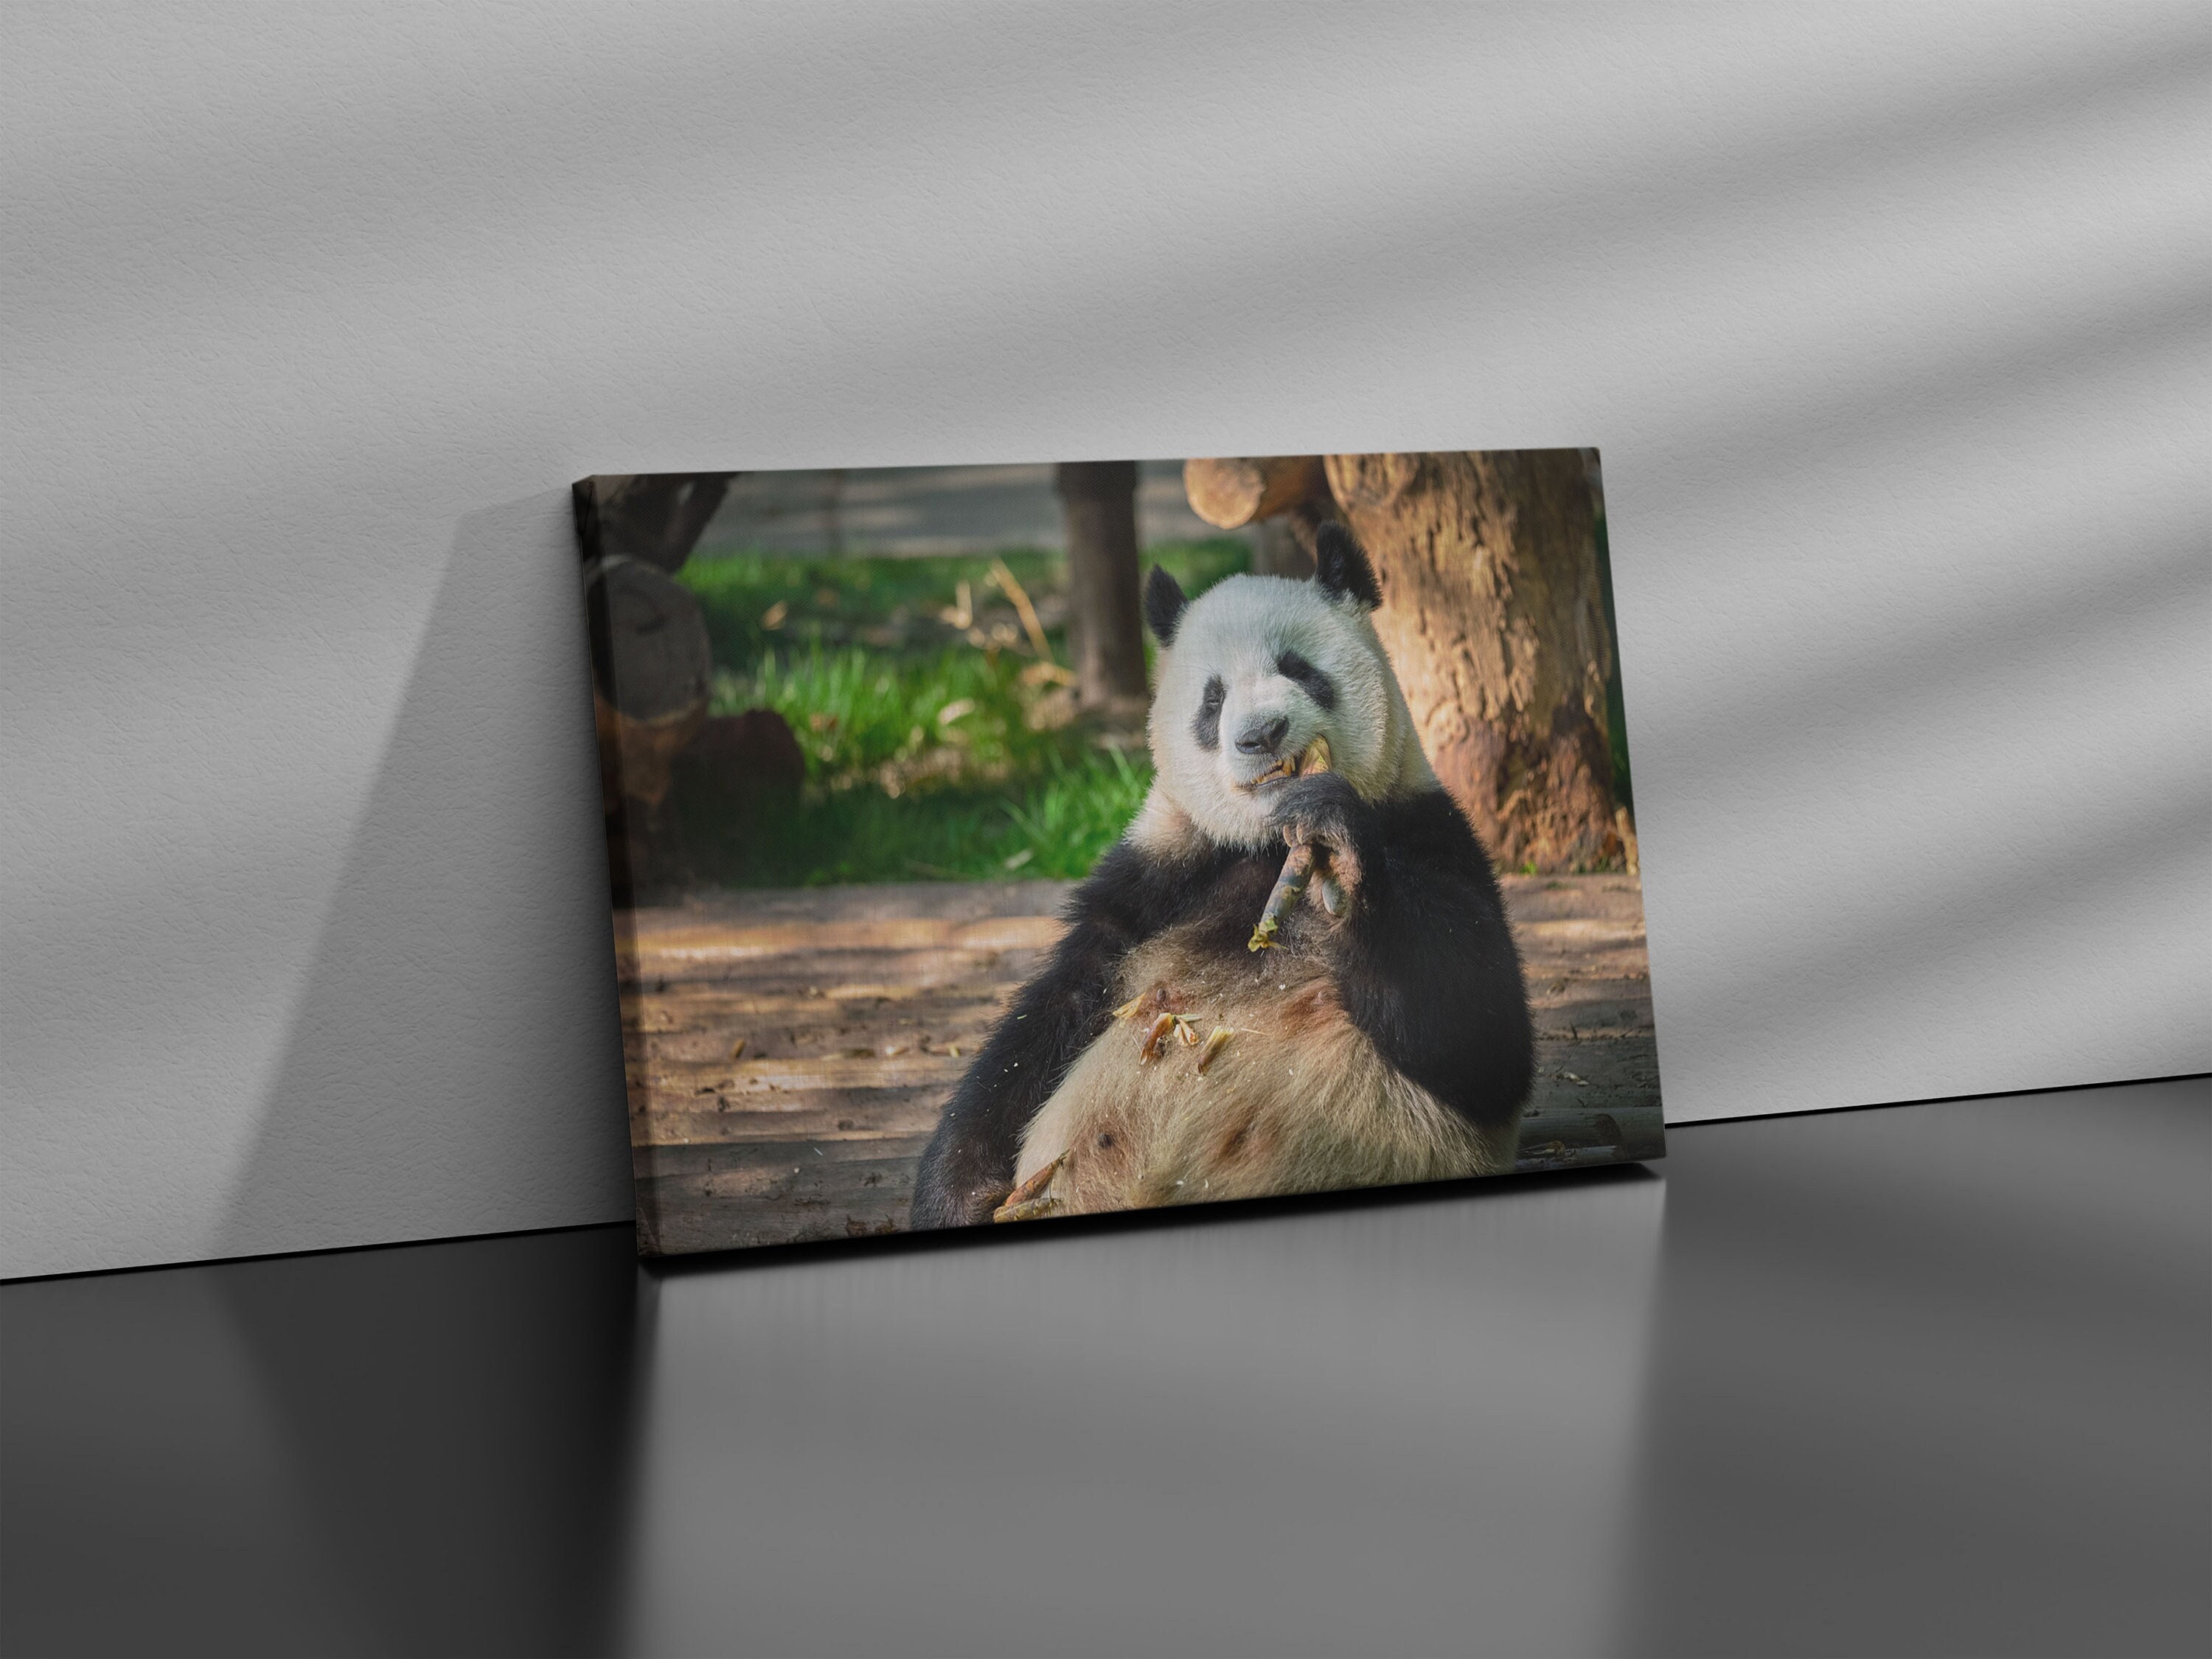 Zoo Atlanta Panda Rolls Enamel Pin Set